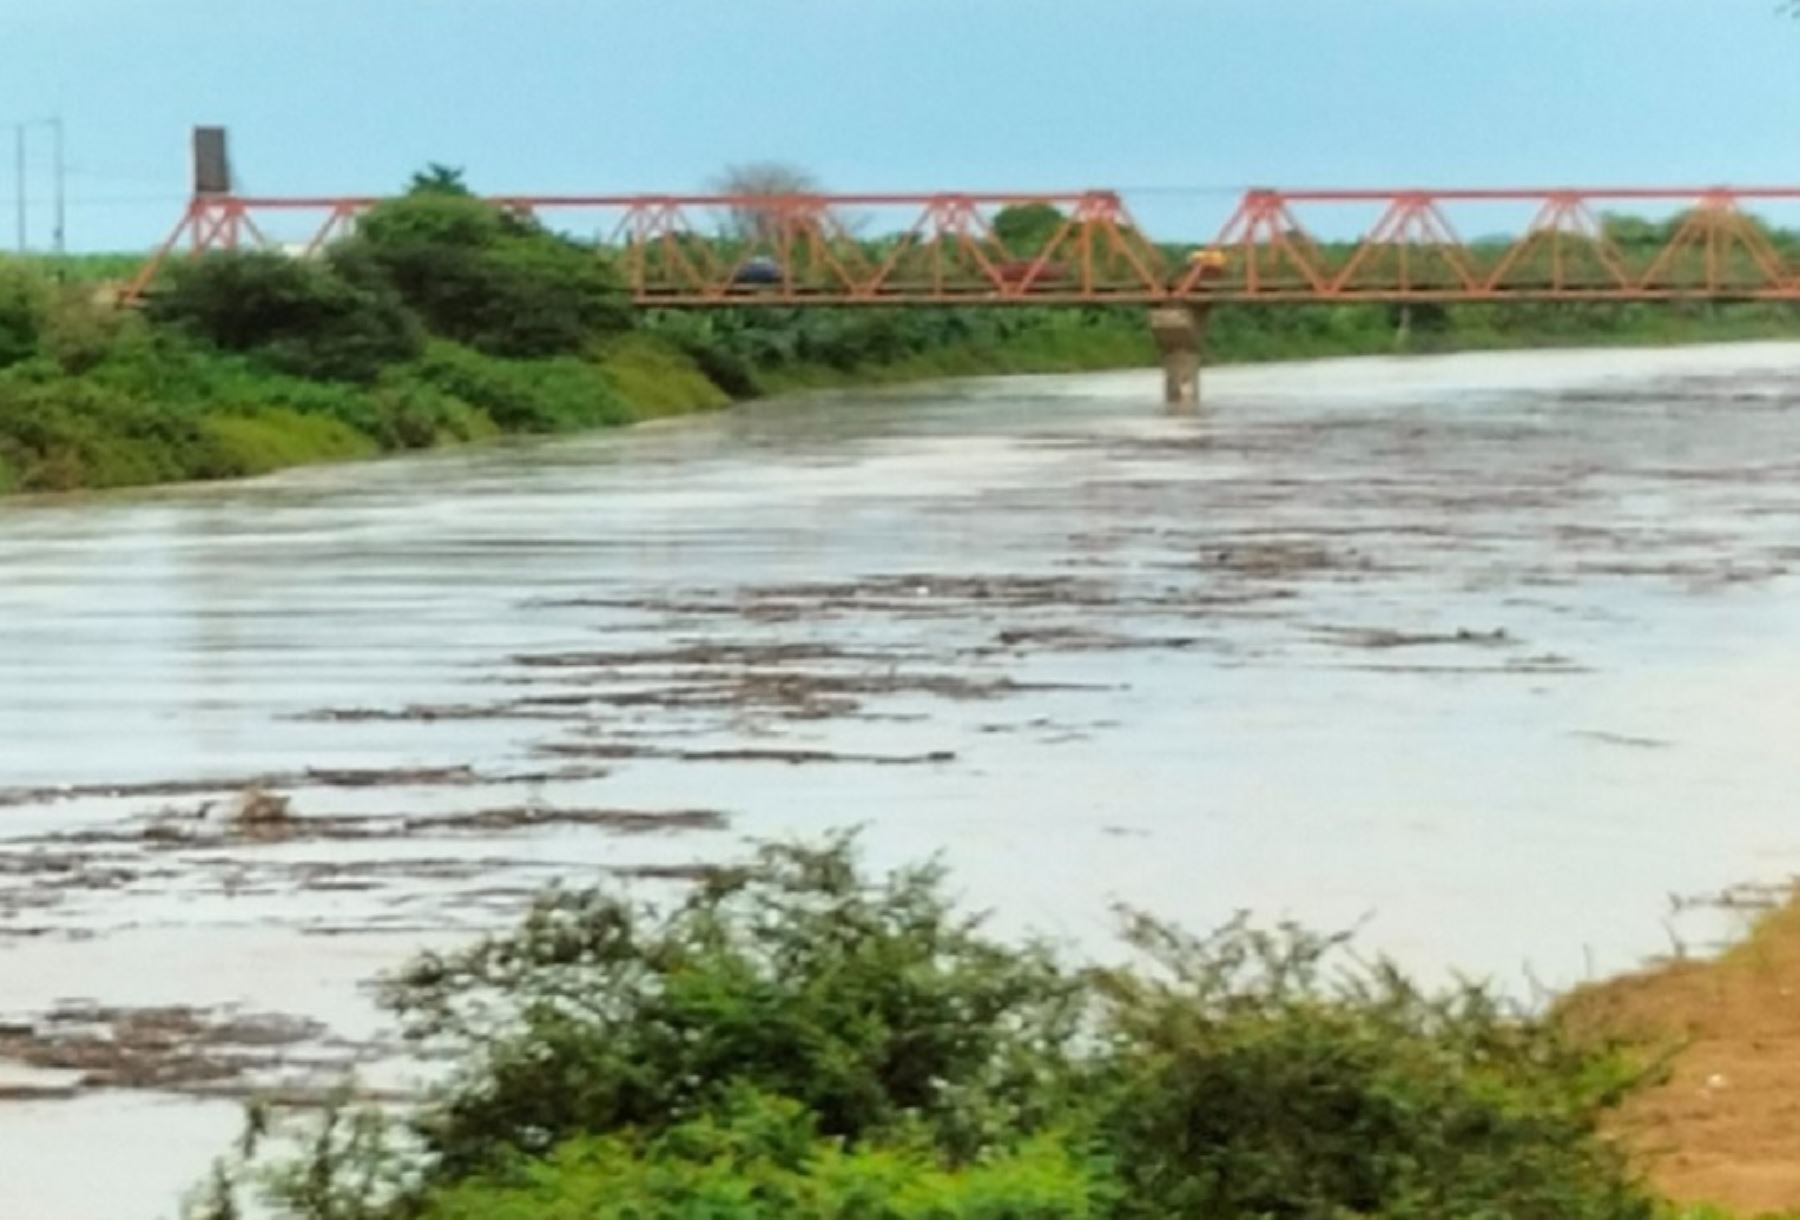 Las incesantes lluvias de gran intensidad que se registran en la región Tumbes incrementaron el caudal del río Tumbes a 630.17 metros por segundo, informó defensa civil.